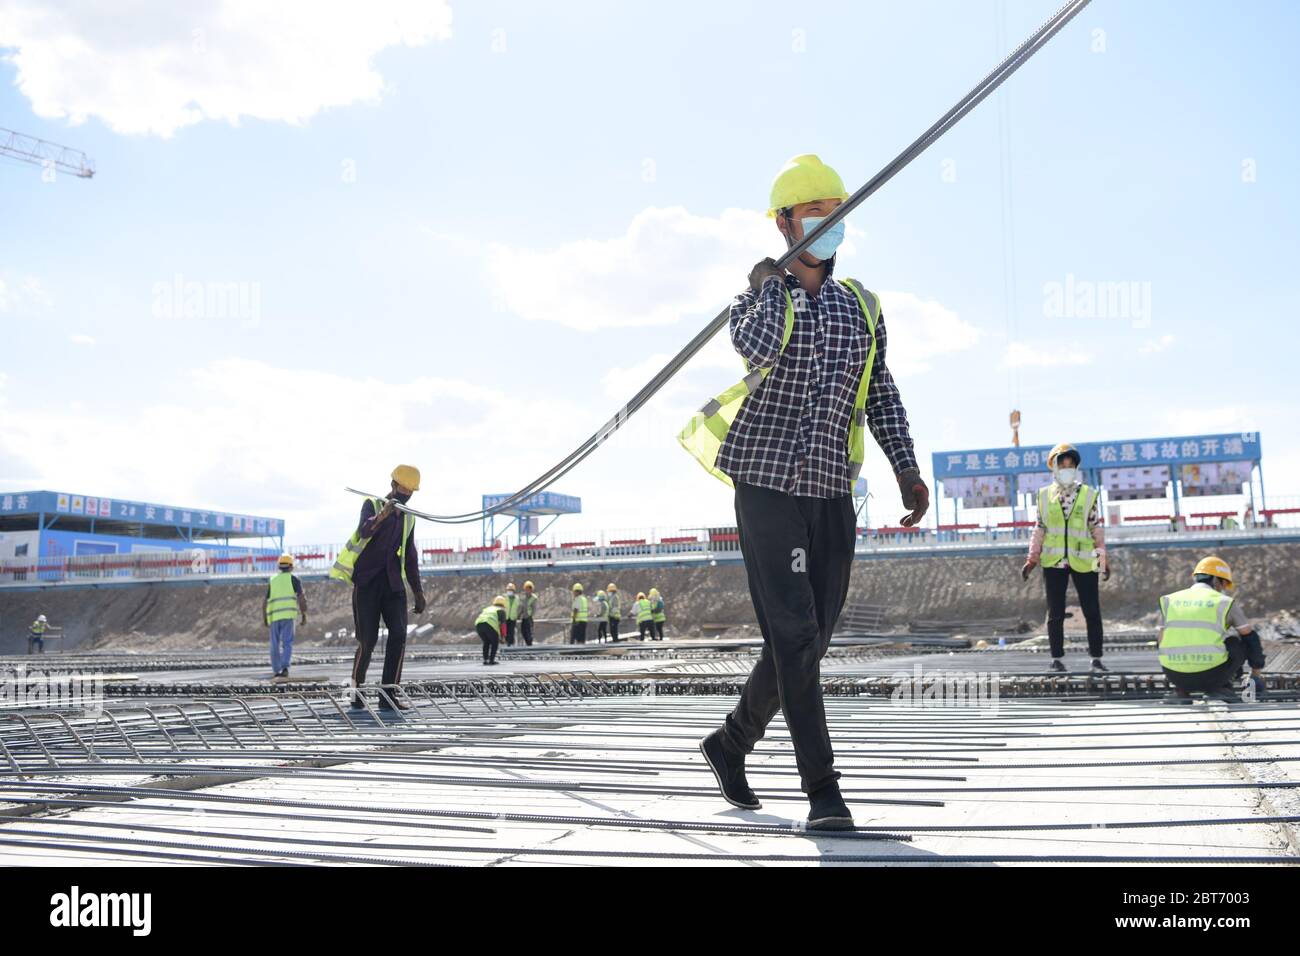 Urumqi, Región Autónoma Uygur de Xinjiang en China. 23 de mayo de 2020. Los trabajadores mueven las barras de refuerzo en el sitio de construcción para el proyecto de expansión del Aeropuerto Internacional Urumqi Diwopu en Urumqi, Región Autónoma Xinjiang Uygur, noroeste de China, 23 de mayo de 2020. El proyecto incluye una nueva terminal de 500,000 metros cuadrados, dos pistas de más de 3,000 metros, un centro de transporte integrado de hasta 92,700 metros cuadrados, un edificio de estacionamiento de más de 250,000 metros cuadrados, así como instalaciones auxiliares. Se espera que el proyecto esté terminado en 2023. Crédito: Ding Lei/Xinhua/Alamy Live News Foto de stock